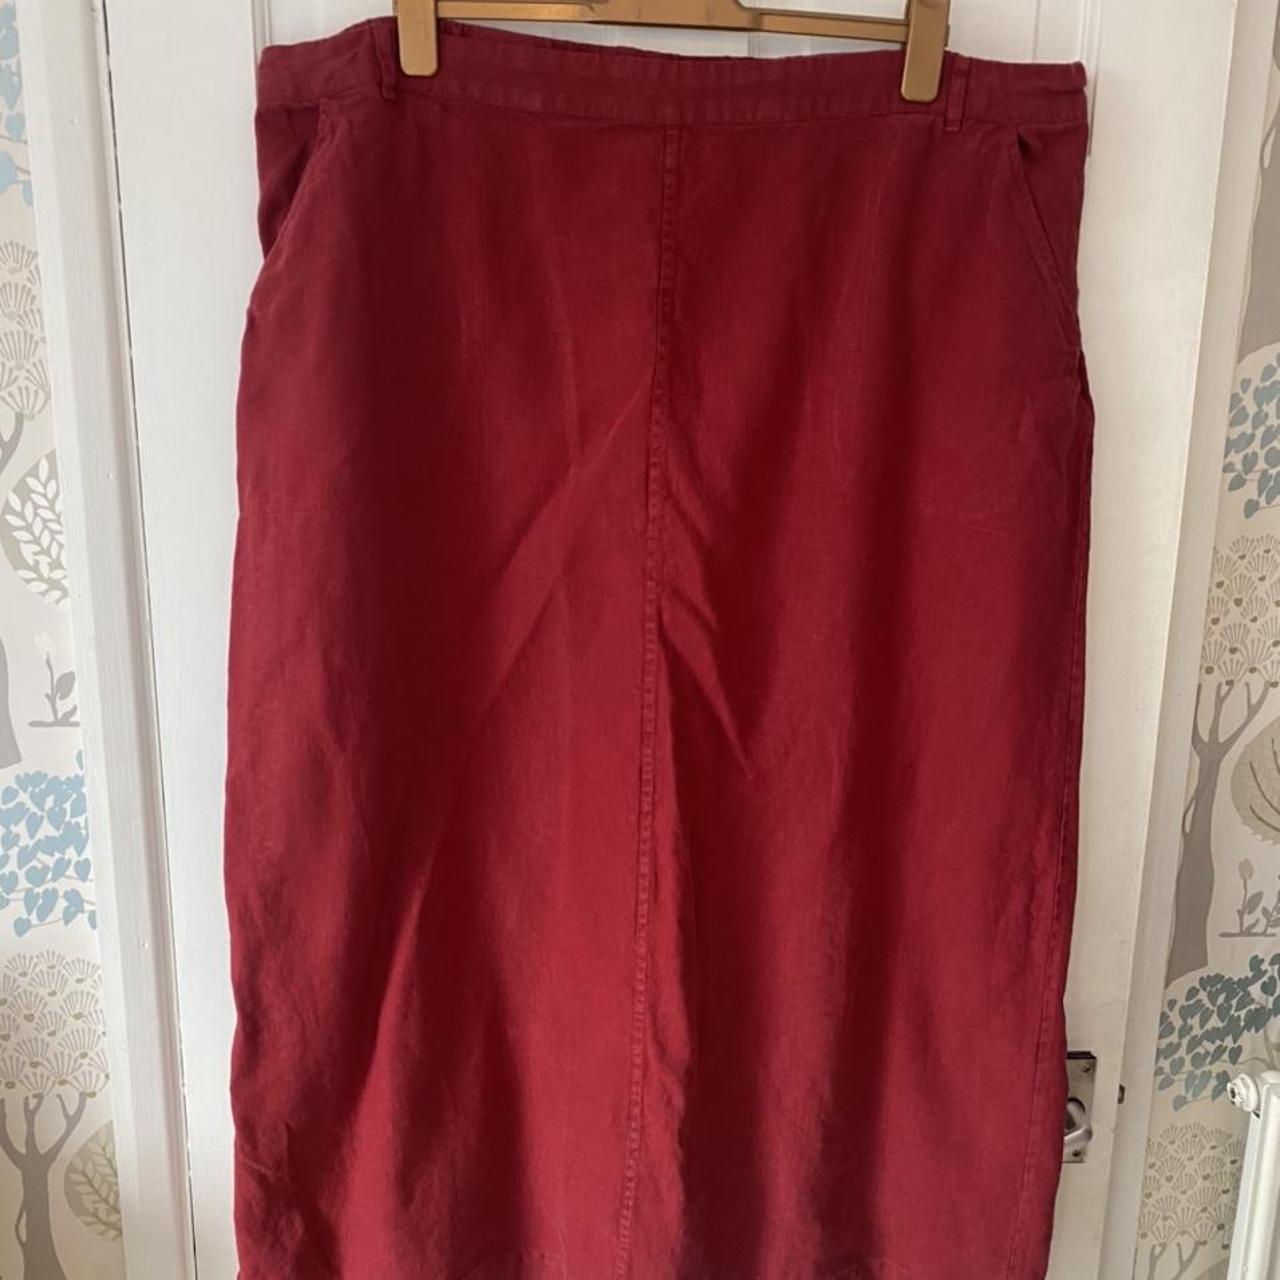 Lovely Seasalt 100% linen red skirt in size 26-28.... - Depop